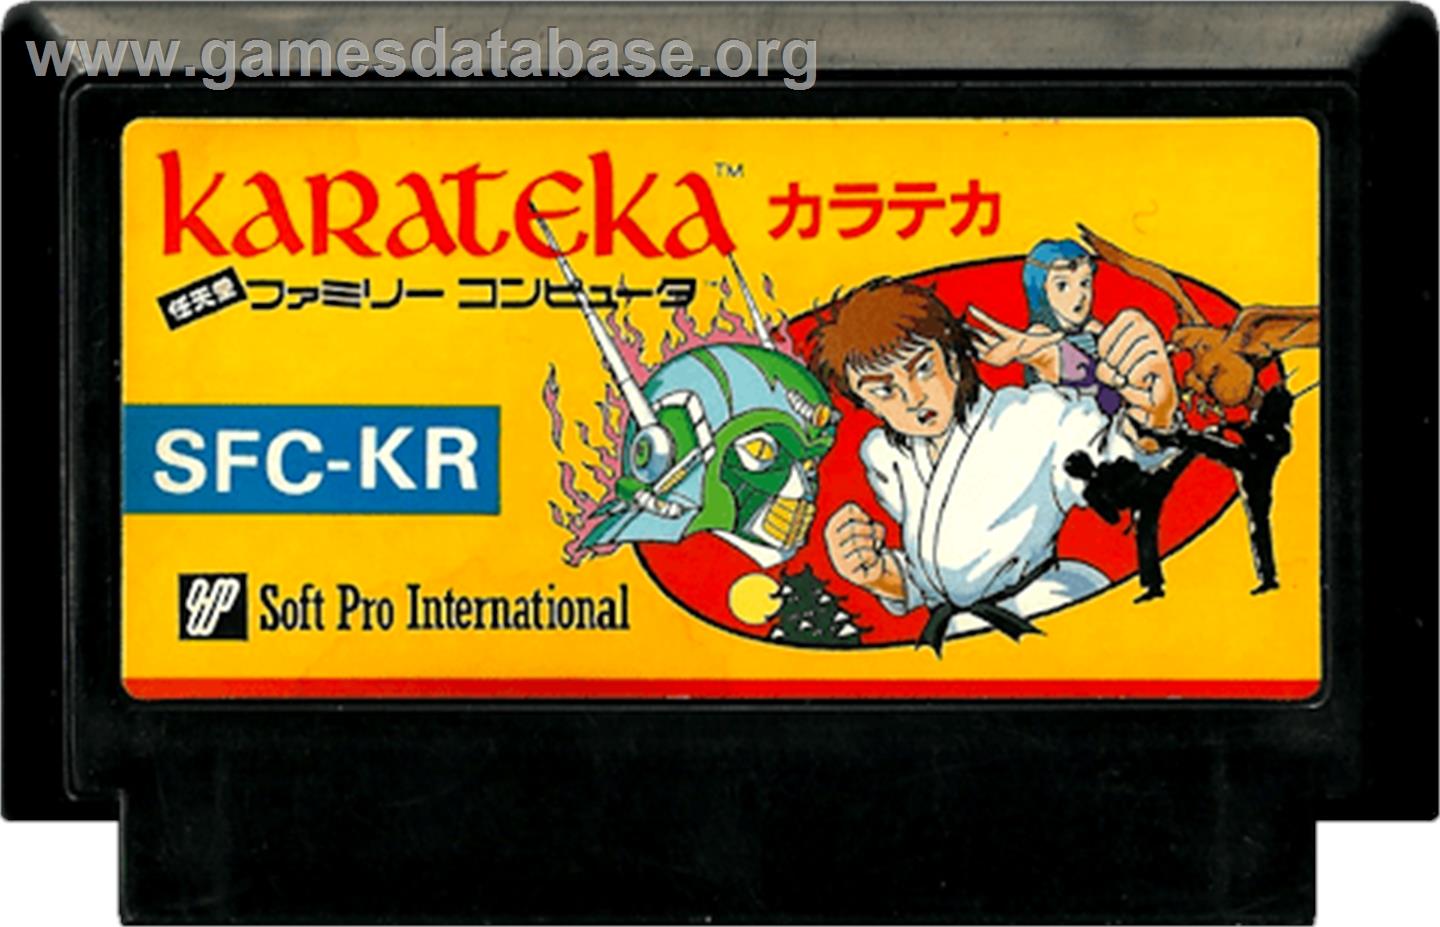 Karateka - Nintendo NES - Artwork - Cartridge